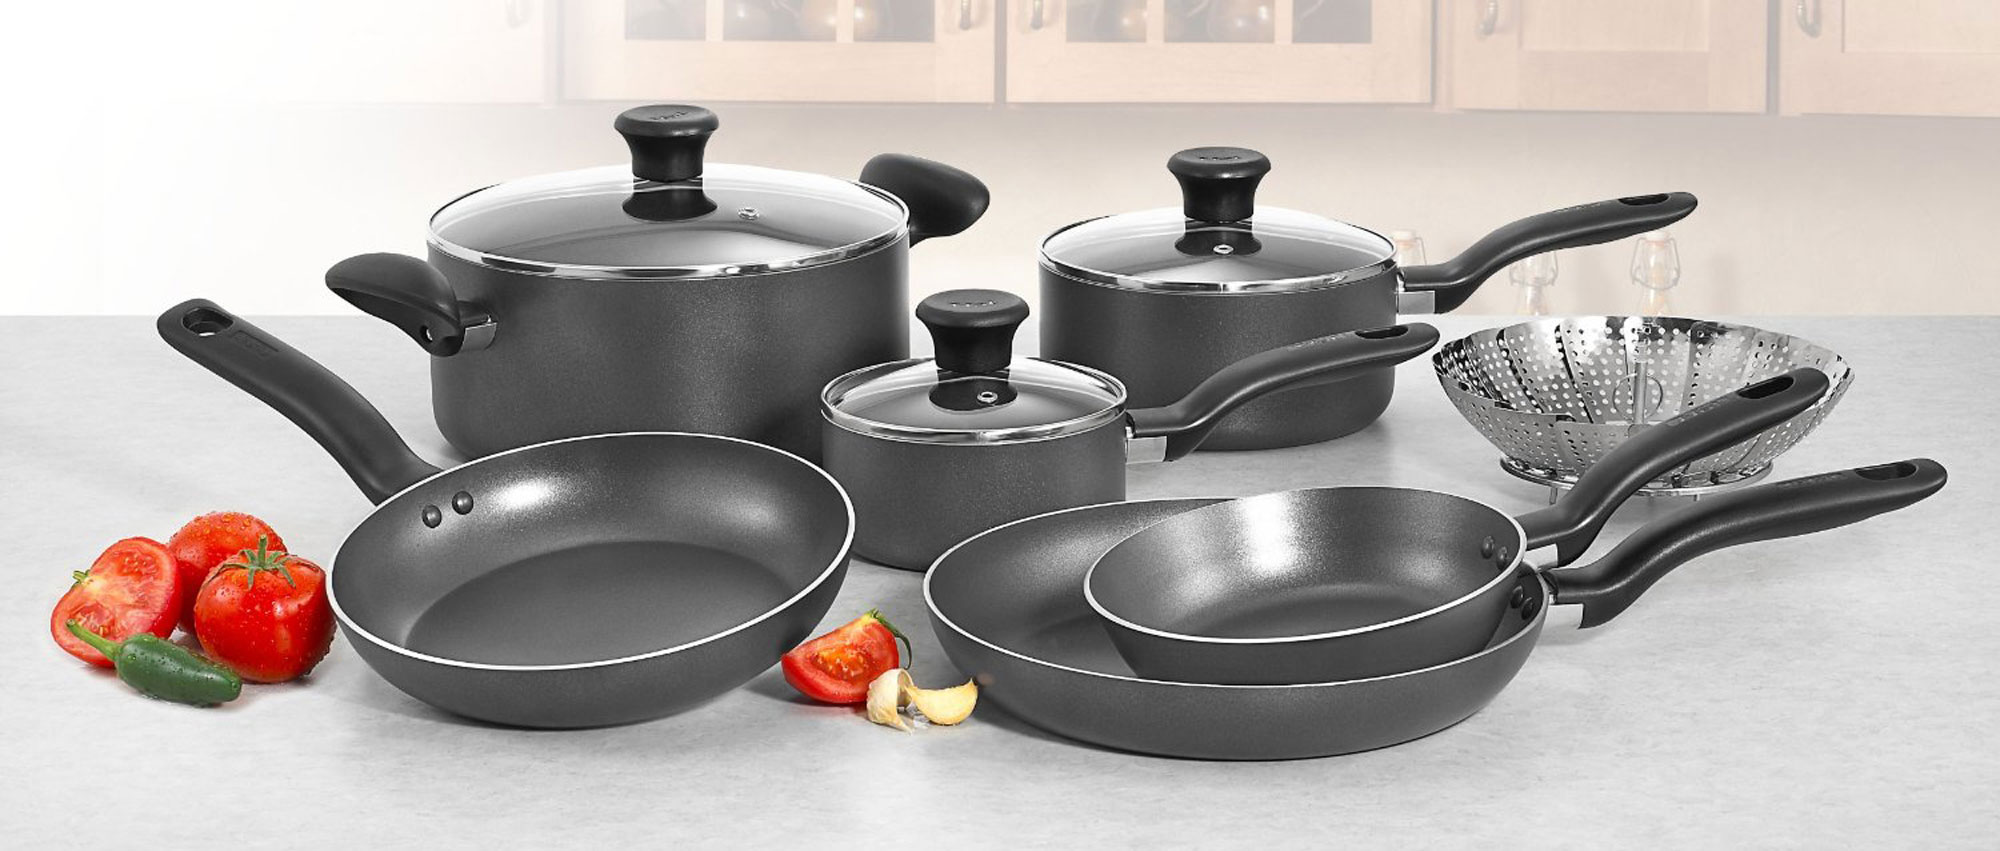 Black cooking pans